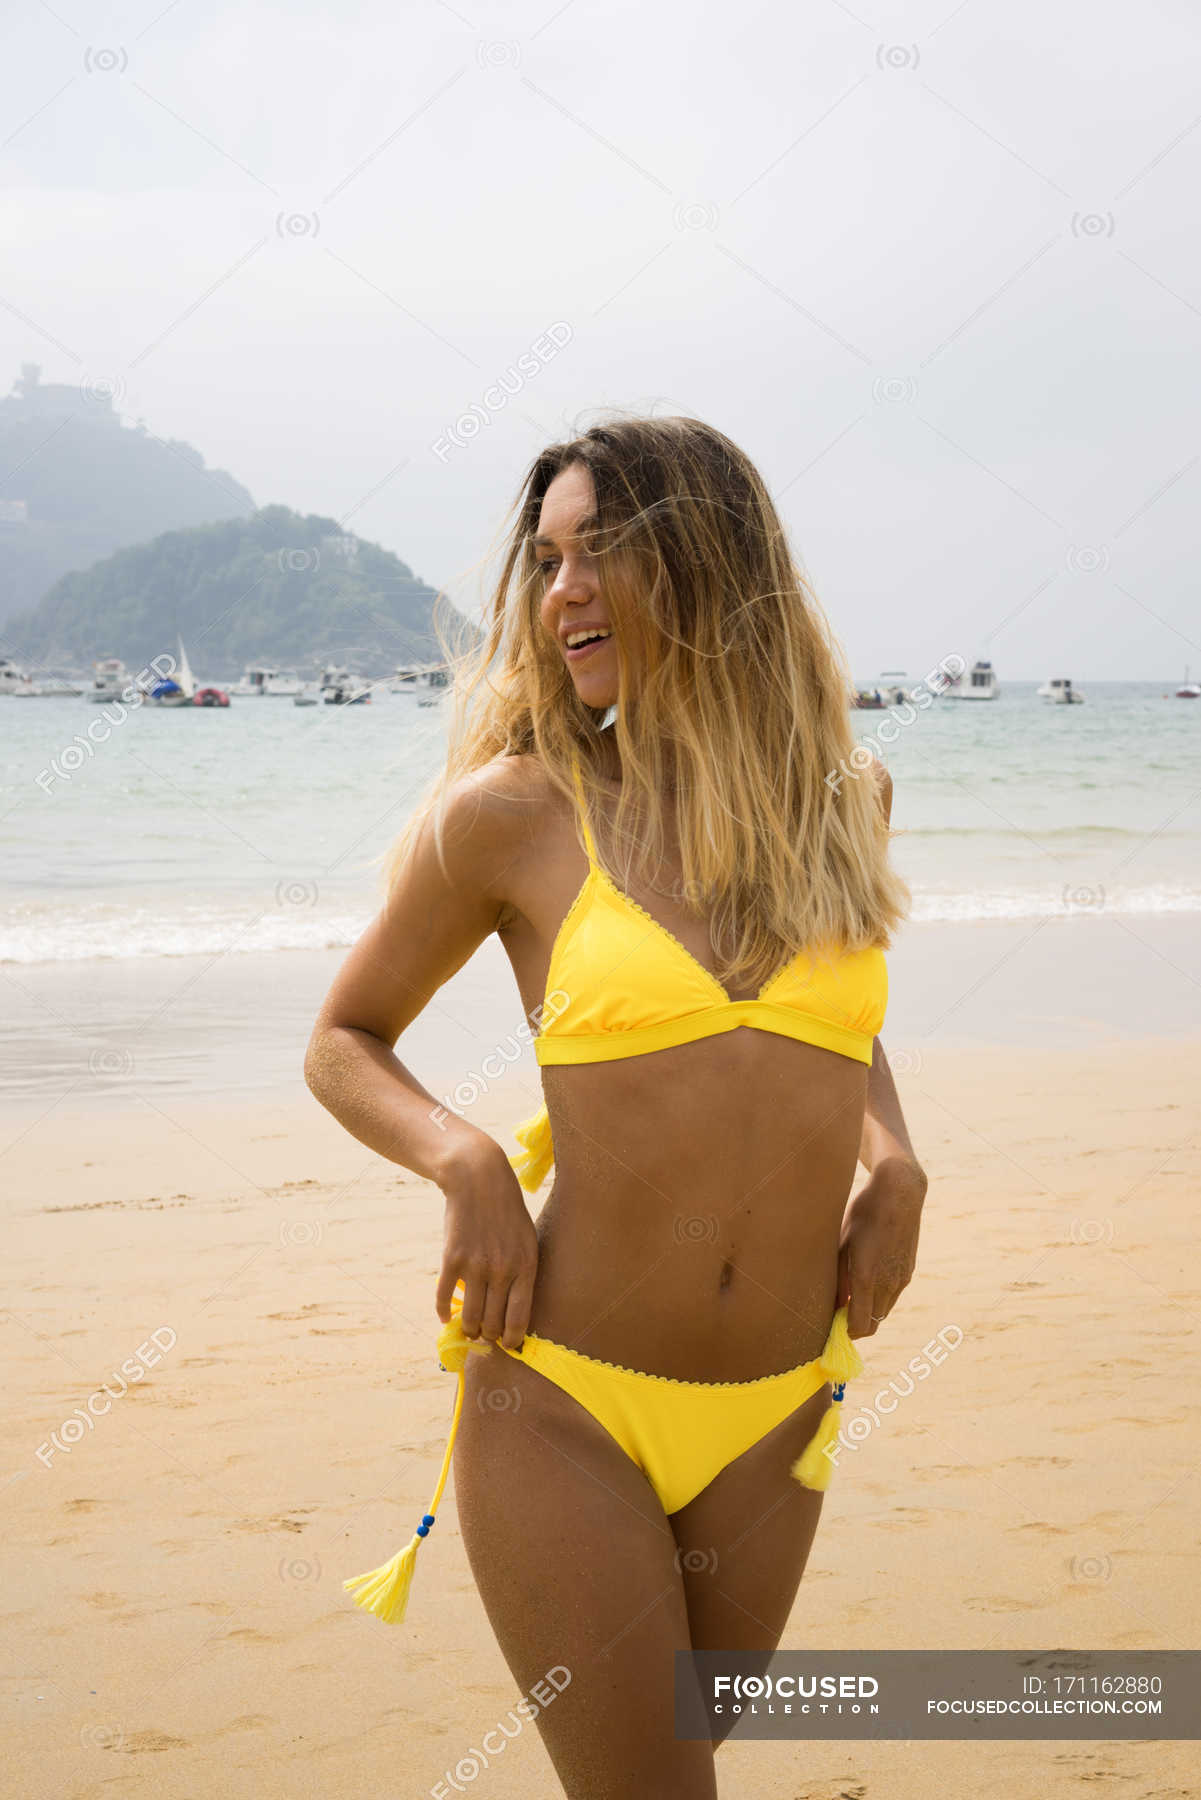 chef het beleid Verdeel Slim blonde girl in bikini on beach looking aside — waving hair, copy space  - Stock Photo | #171162880